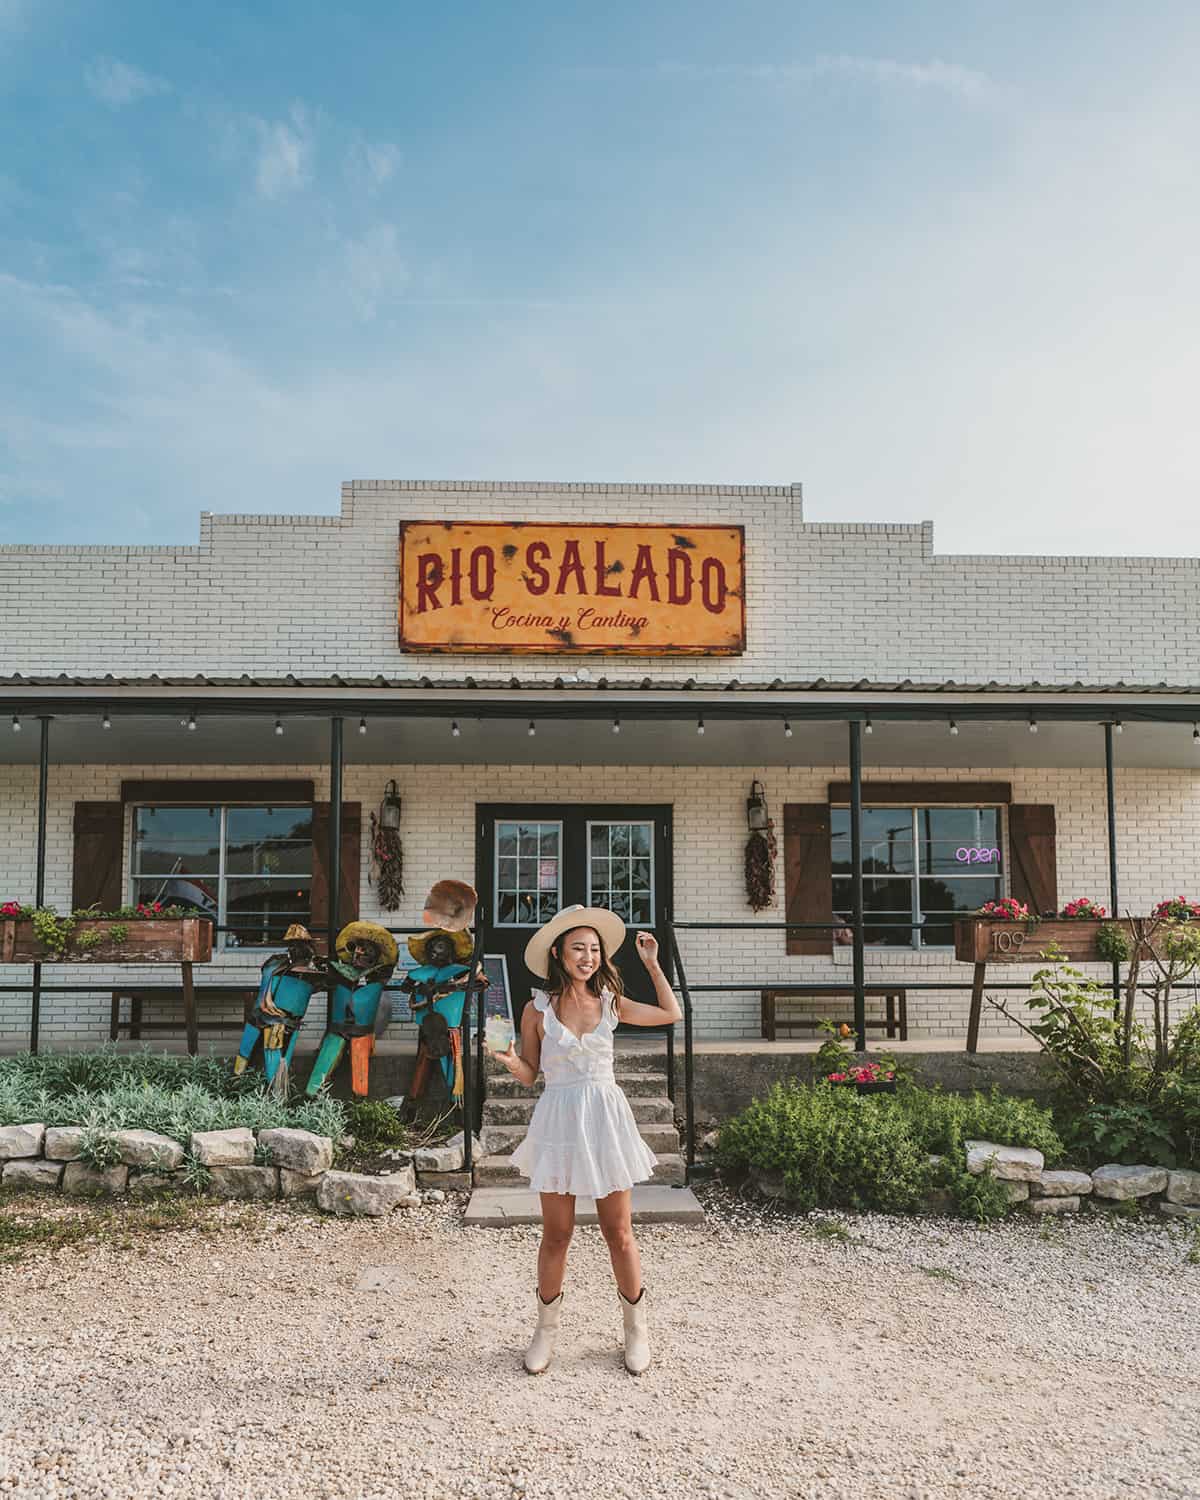 Rios Salado Cocina Y Cantina in Salado Texas